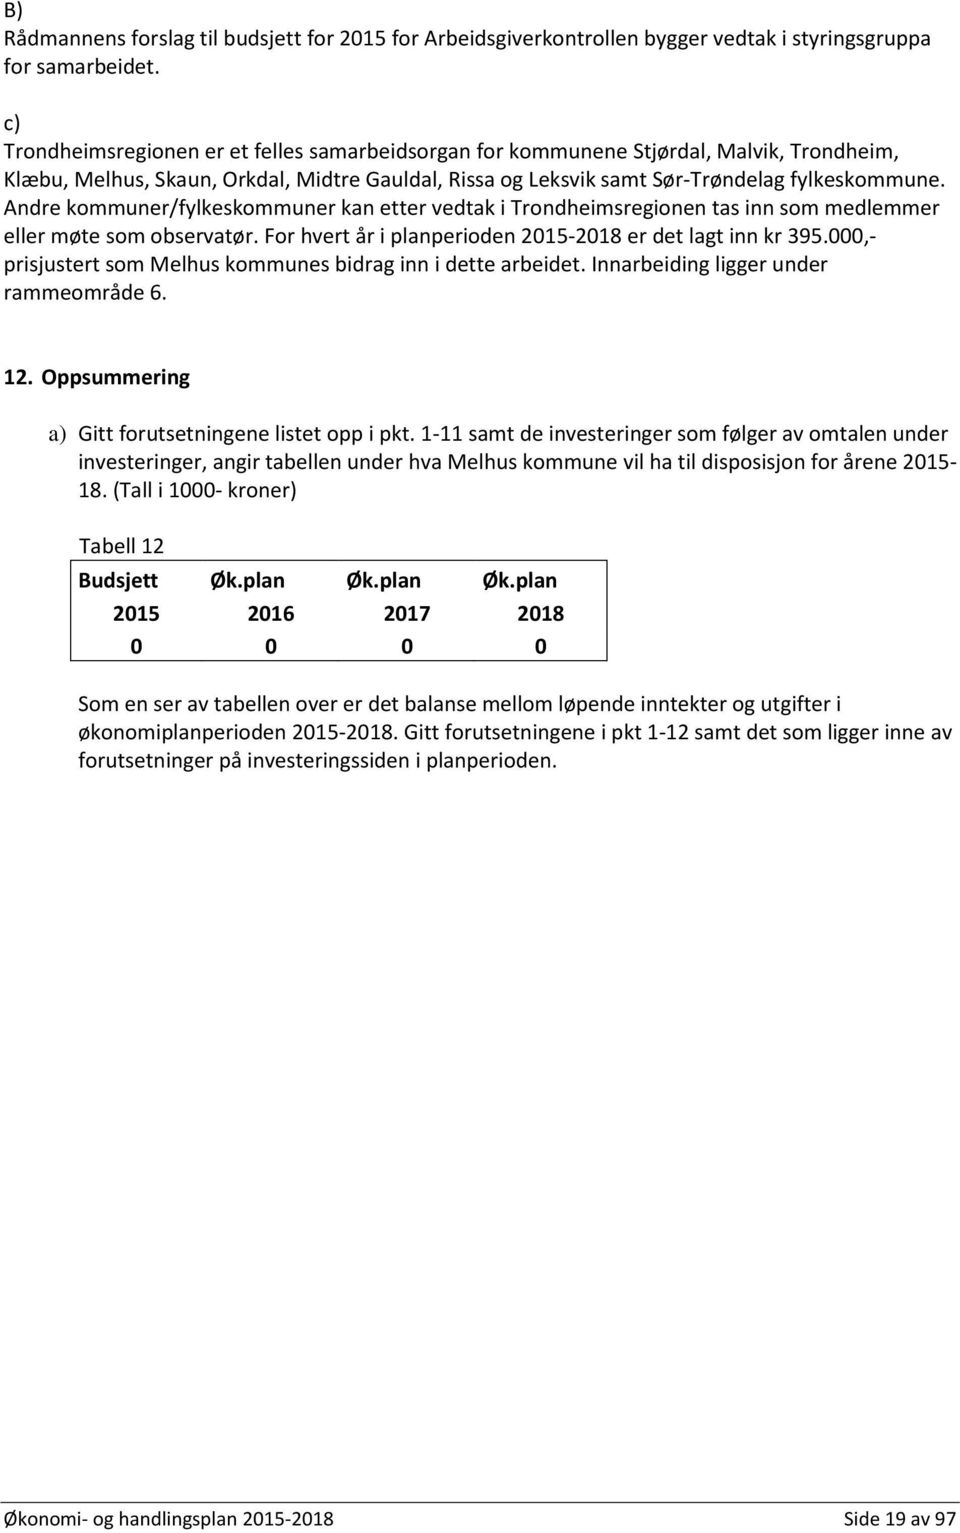 Andre kommuner/fylkeskommuner kan etter vedtak i Trondheimsregionen tas inn som medlemmer eller møte som observatør. For hvert år i planperioden 2015-2018 er det lagt inn kr 395.